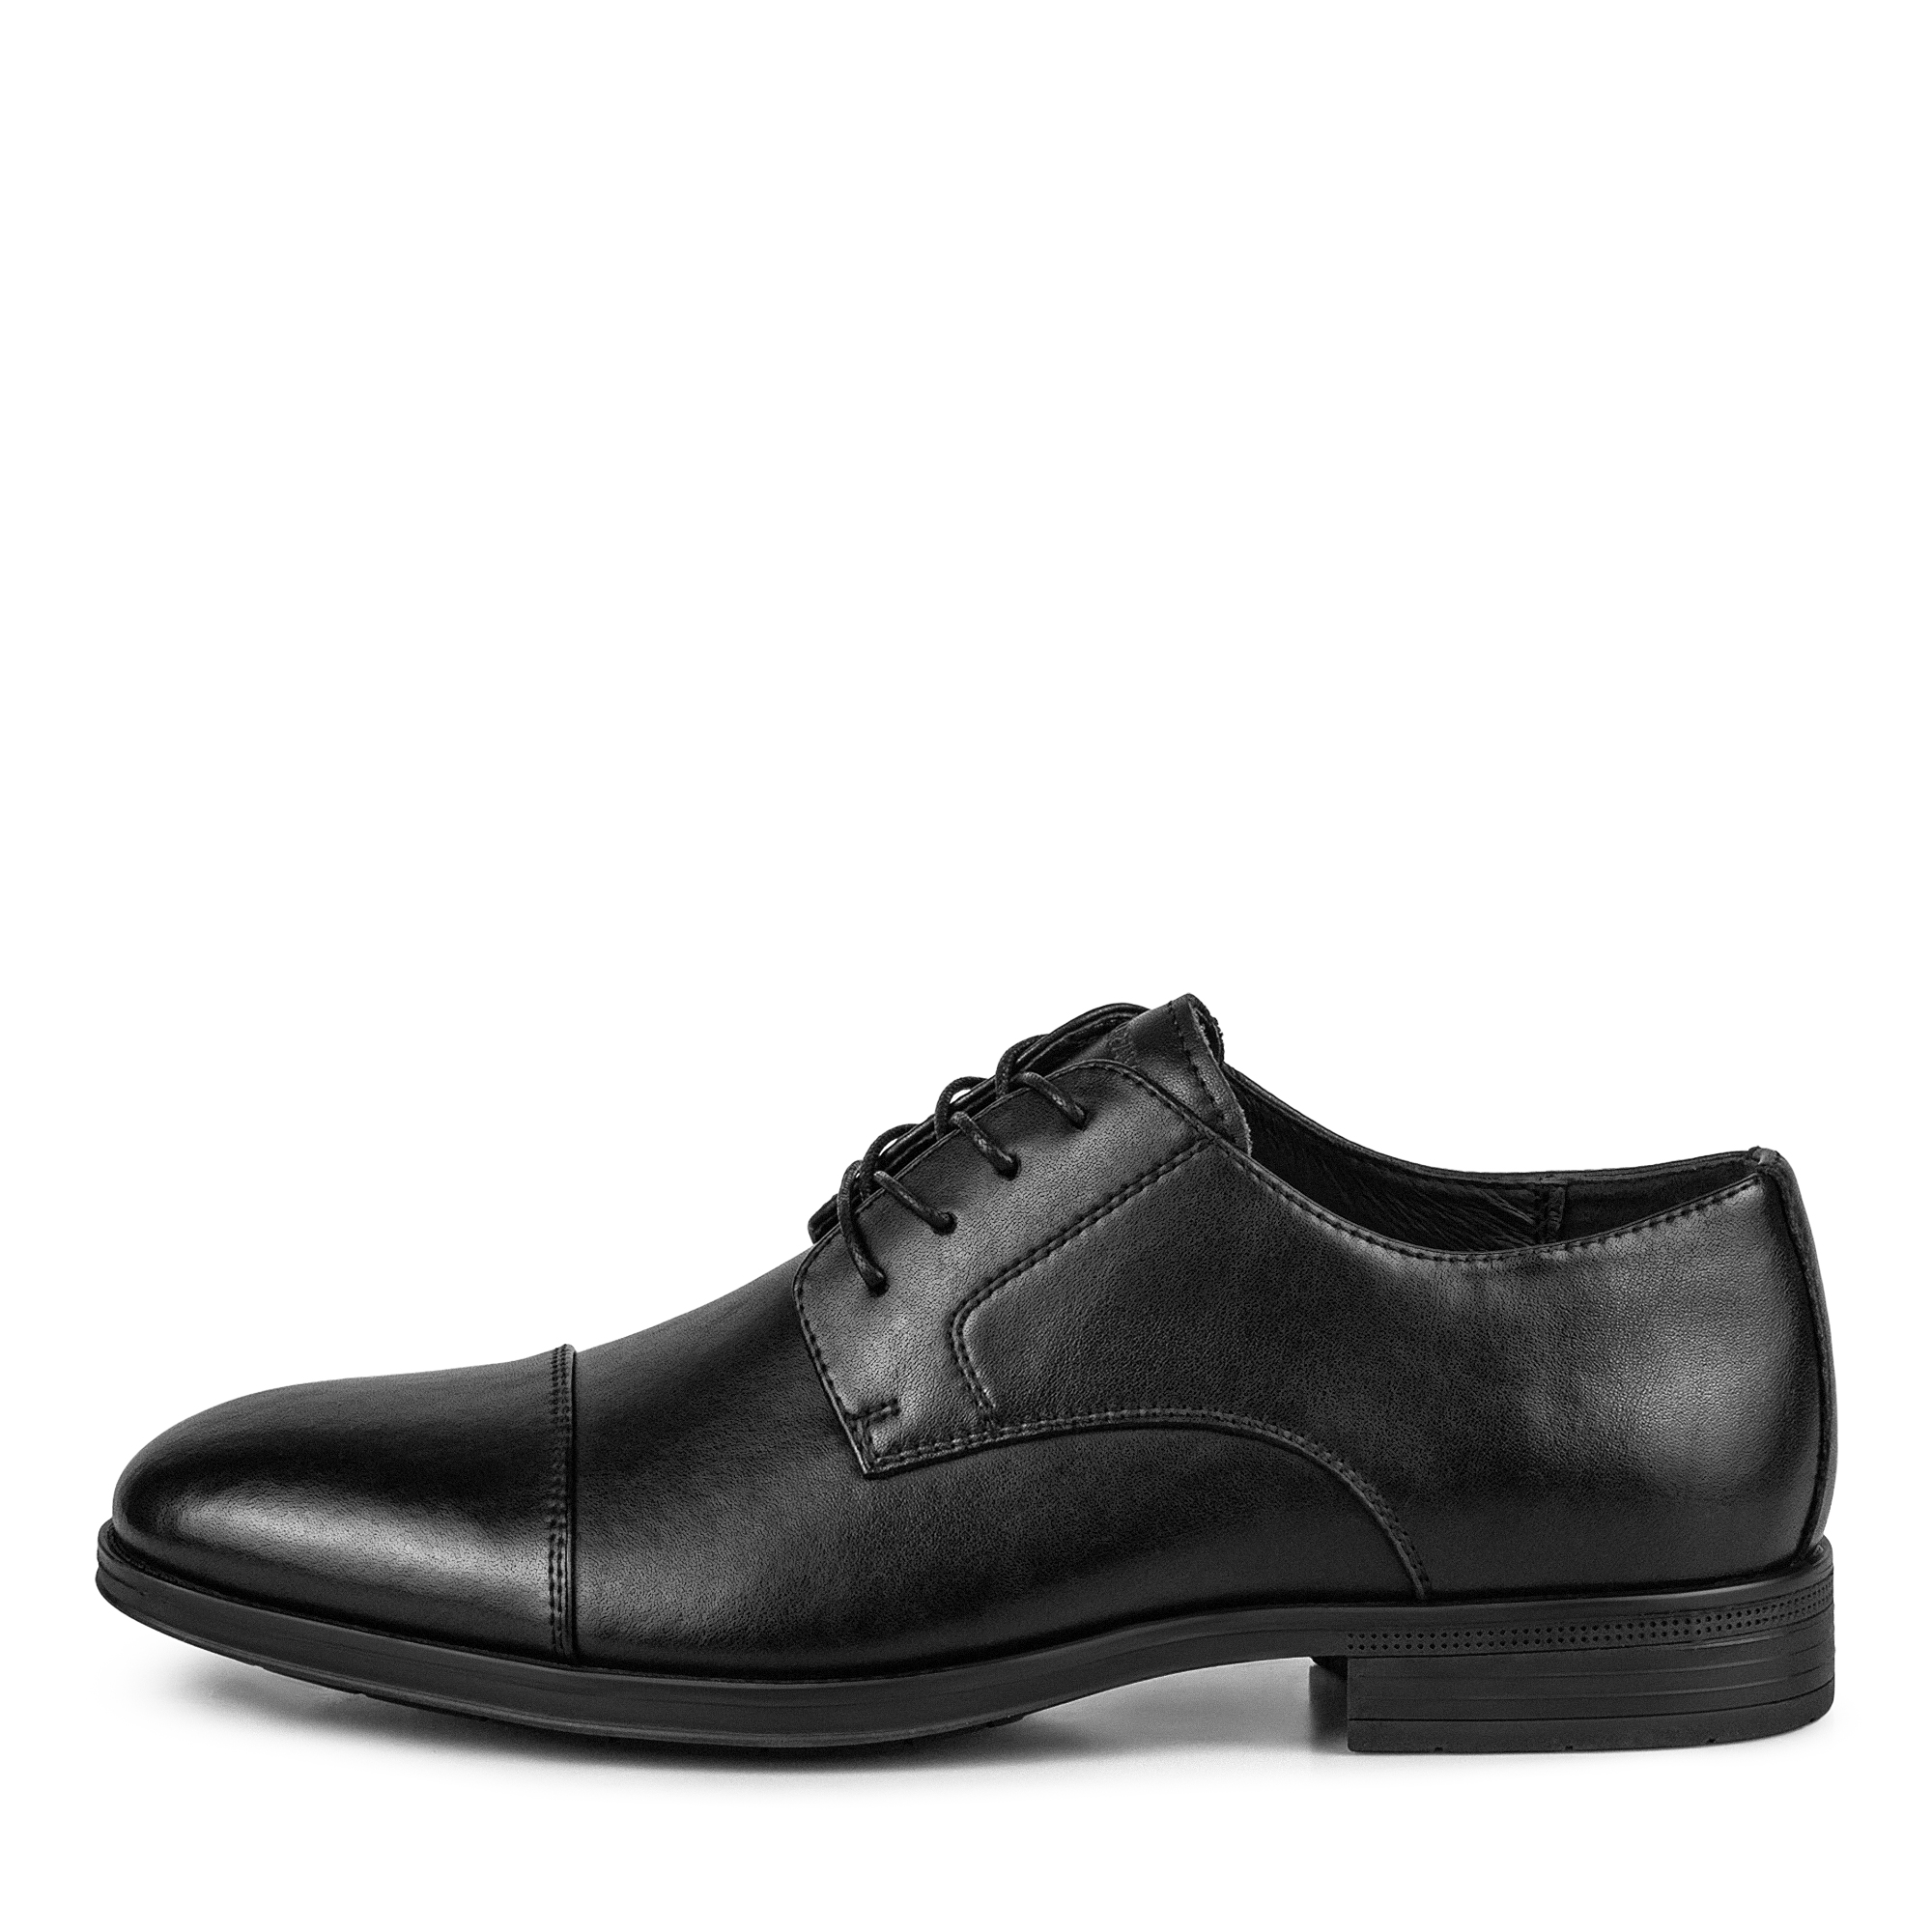 Туфли Thomas Munz 104-630A-1602, цвет черный, размер 41